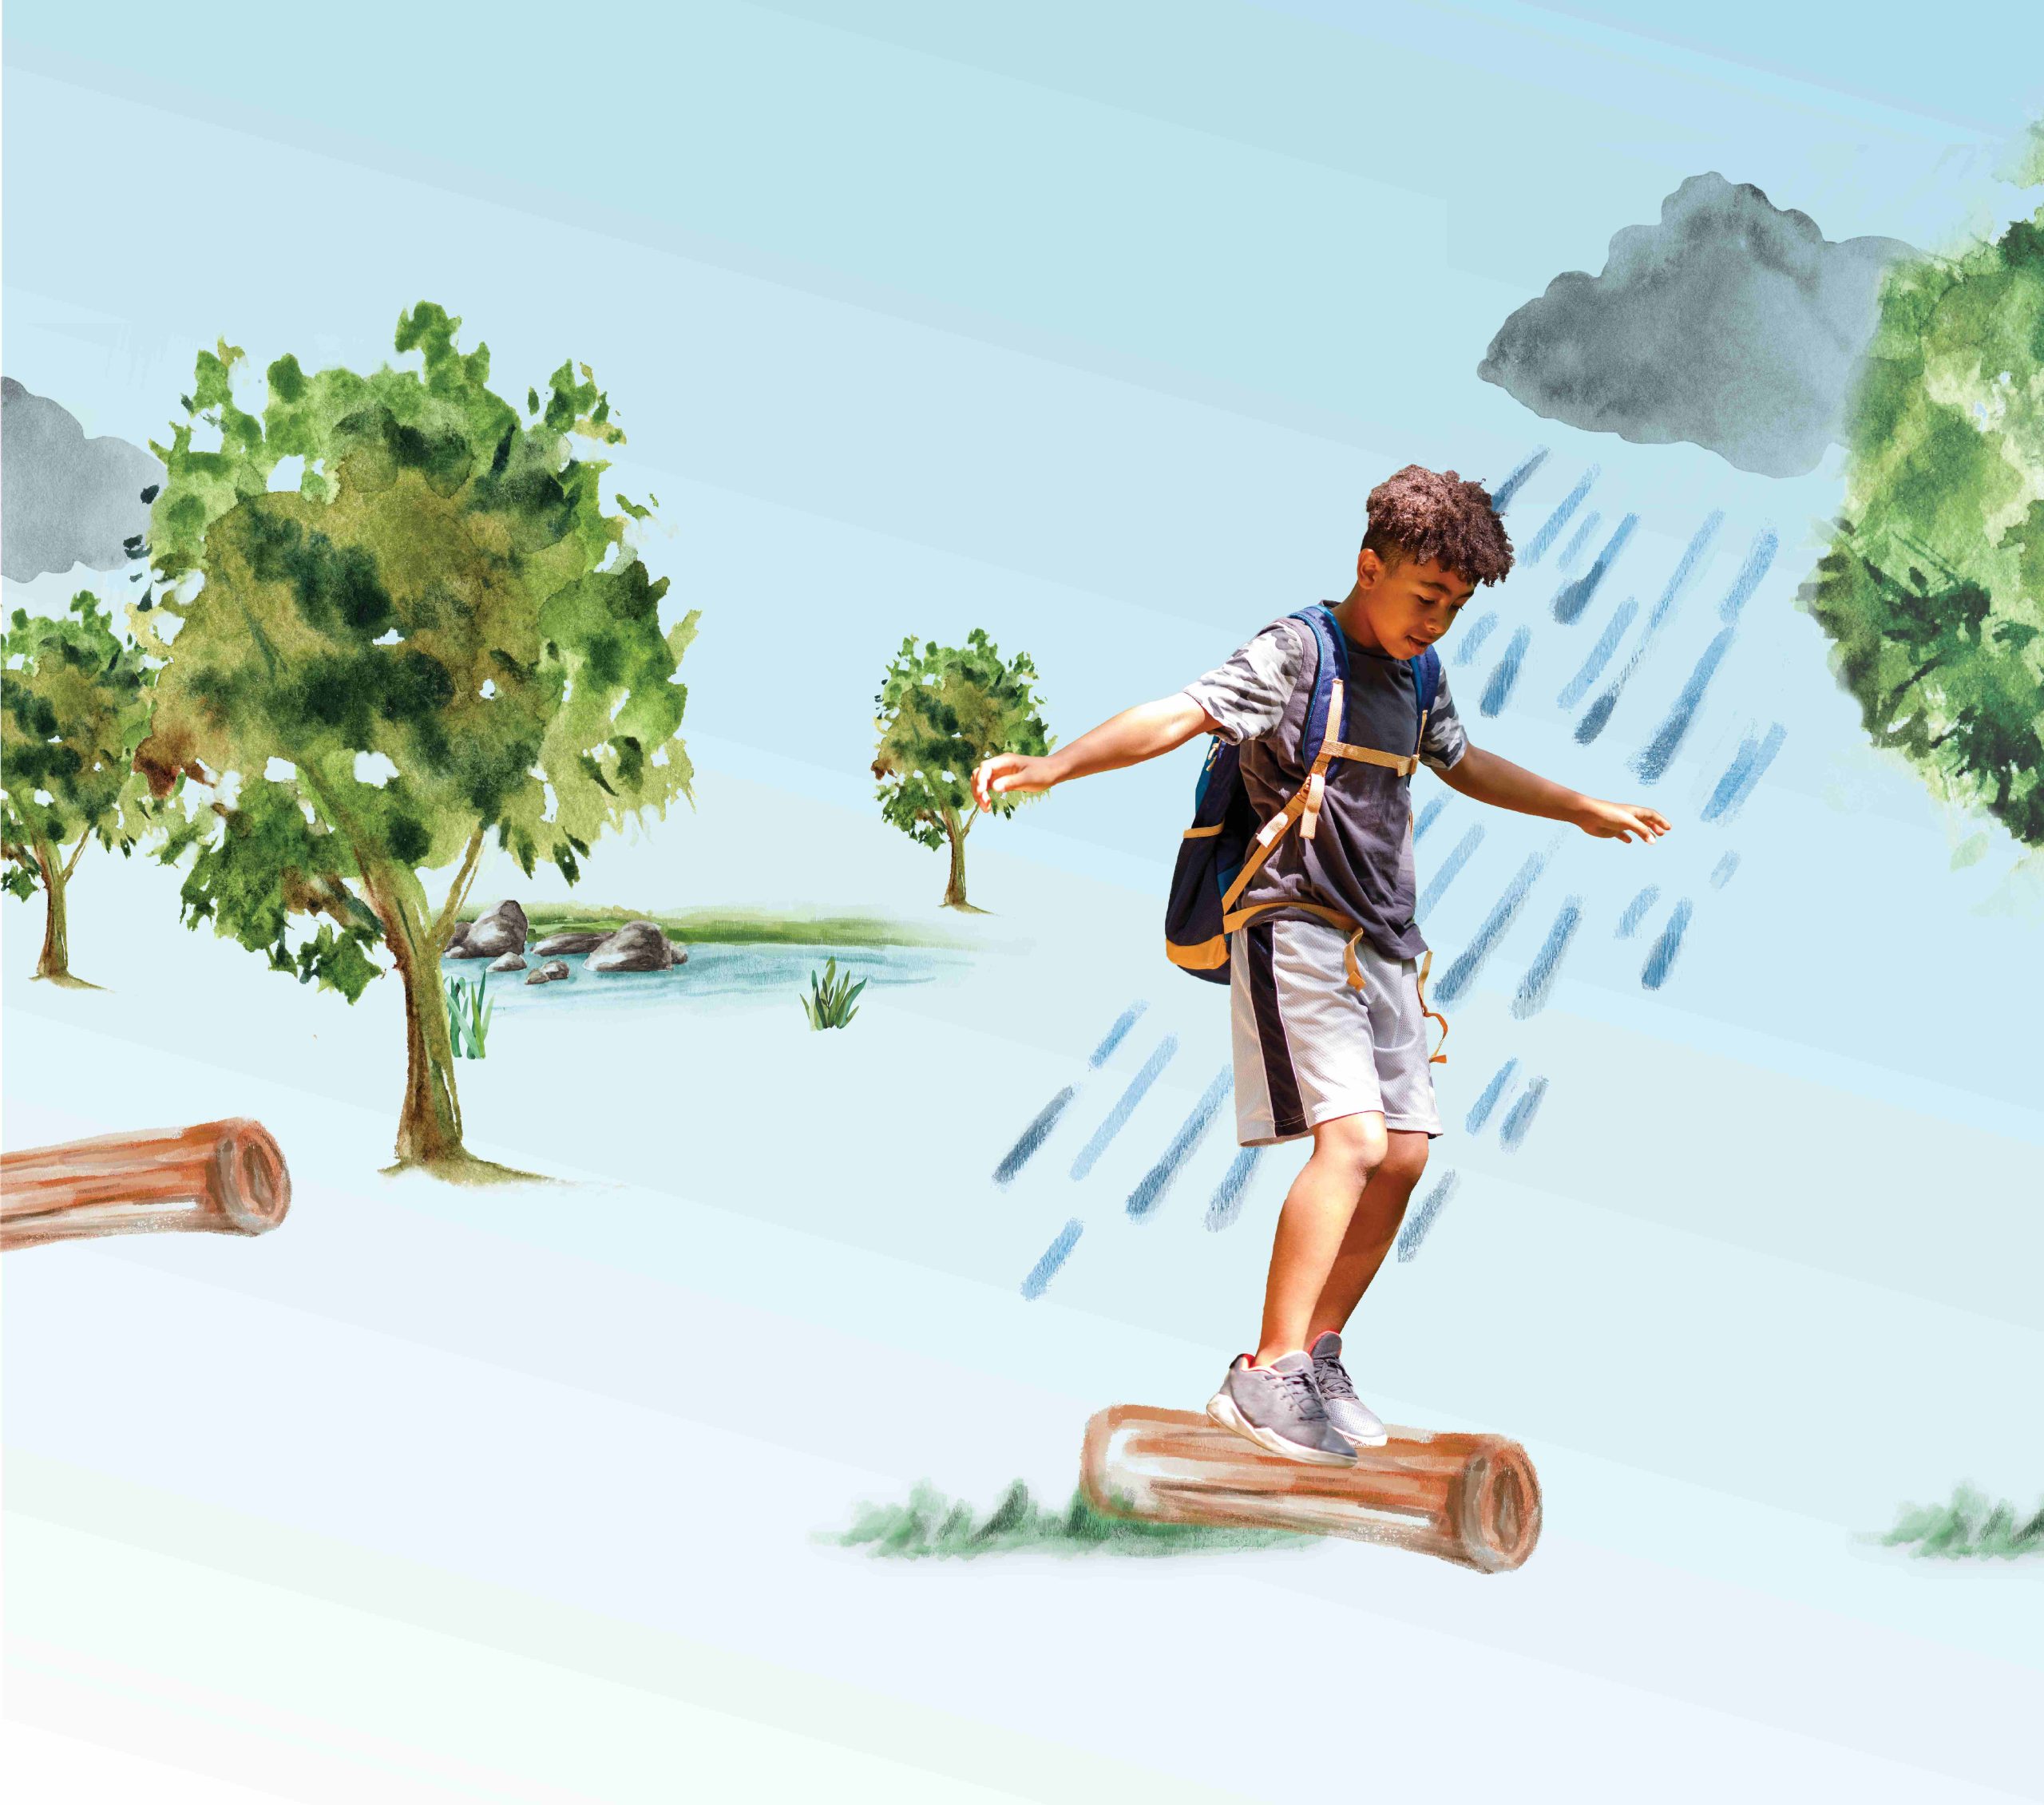 Un garçon en équilibre sur une bûche dans une tempête.